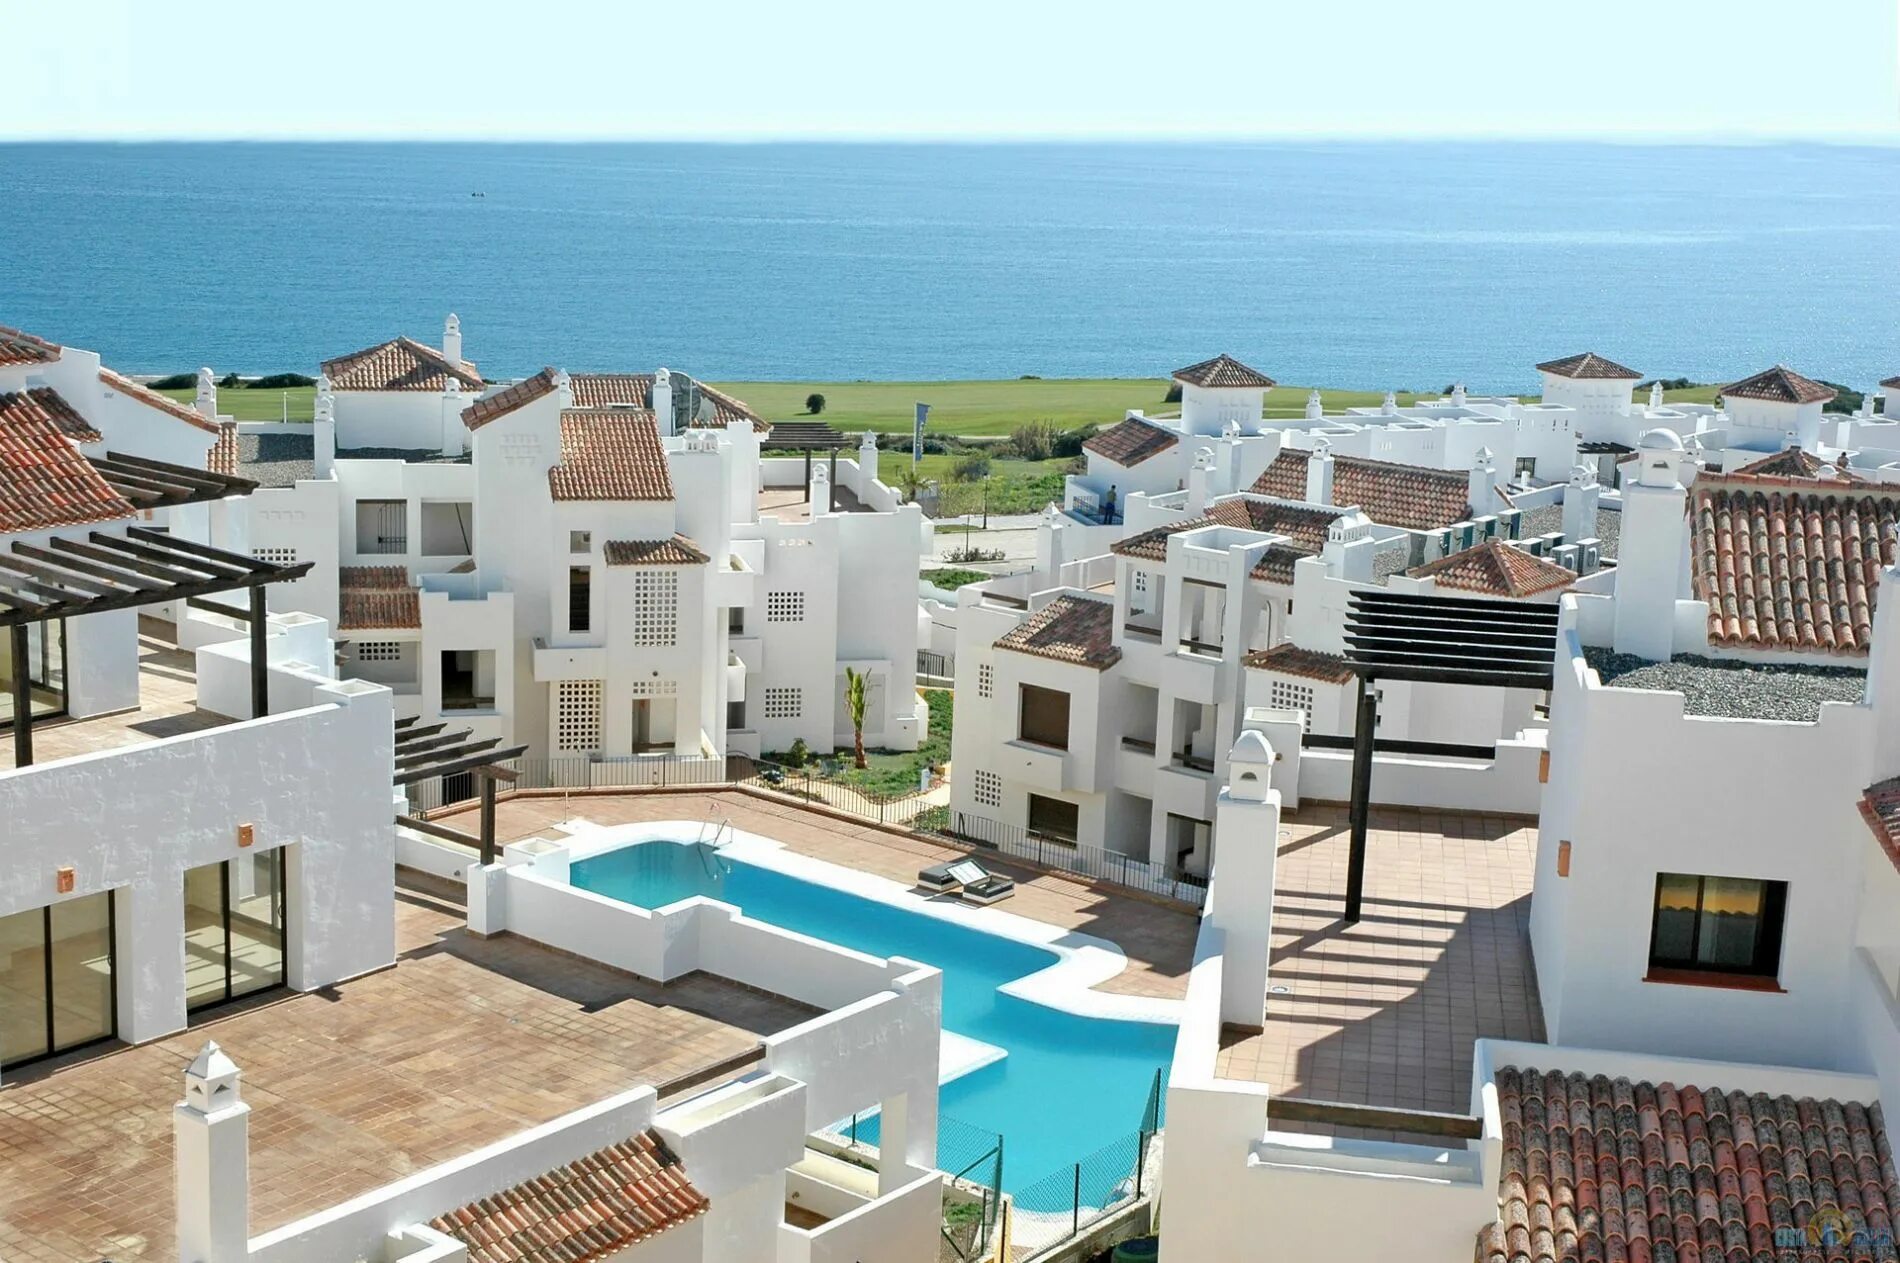 Купить жилье в нее. Недвижимость в Испании. Жилье в Испании. Испанские дома на побережье. Домик в Испании у моря.